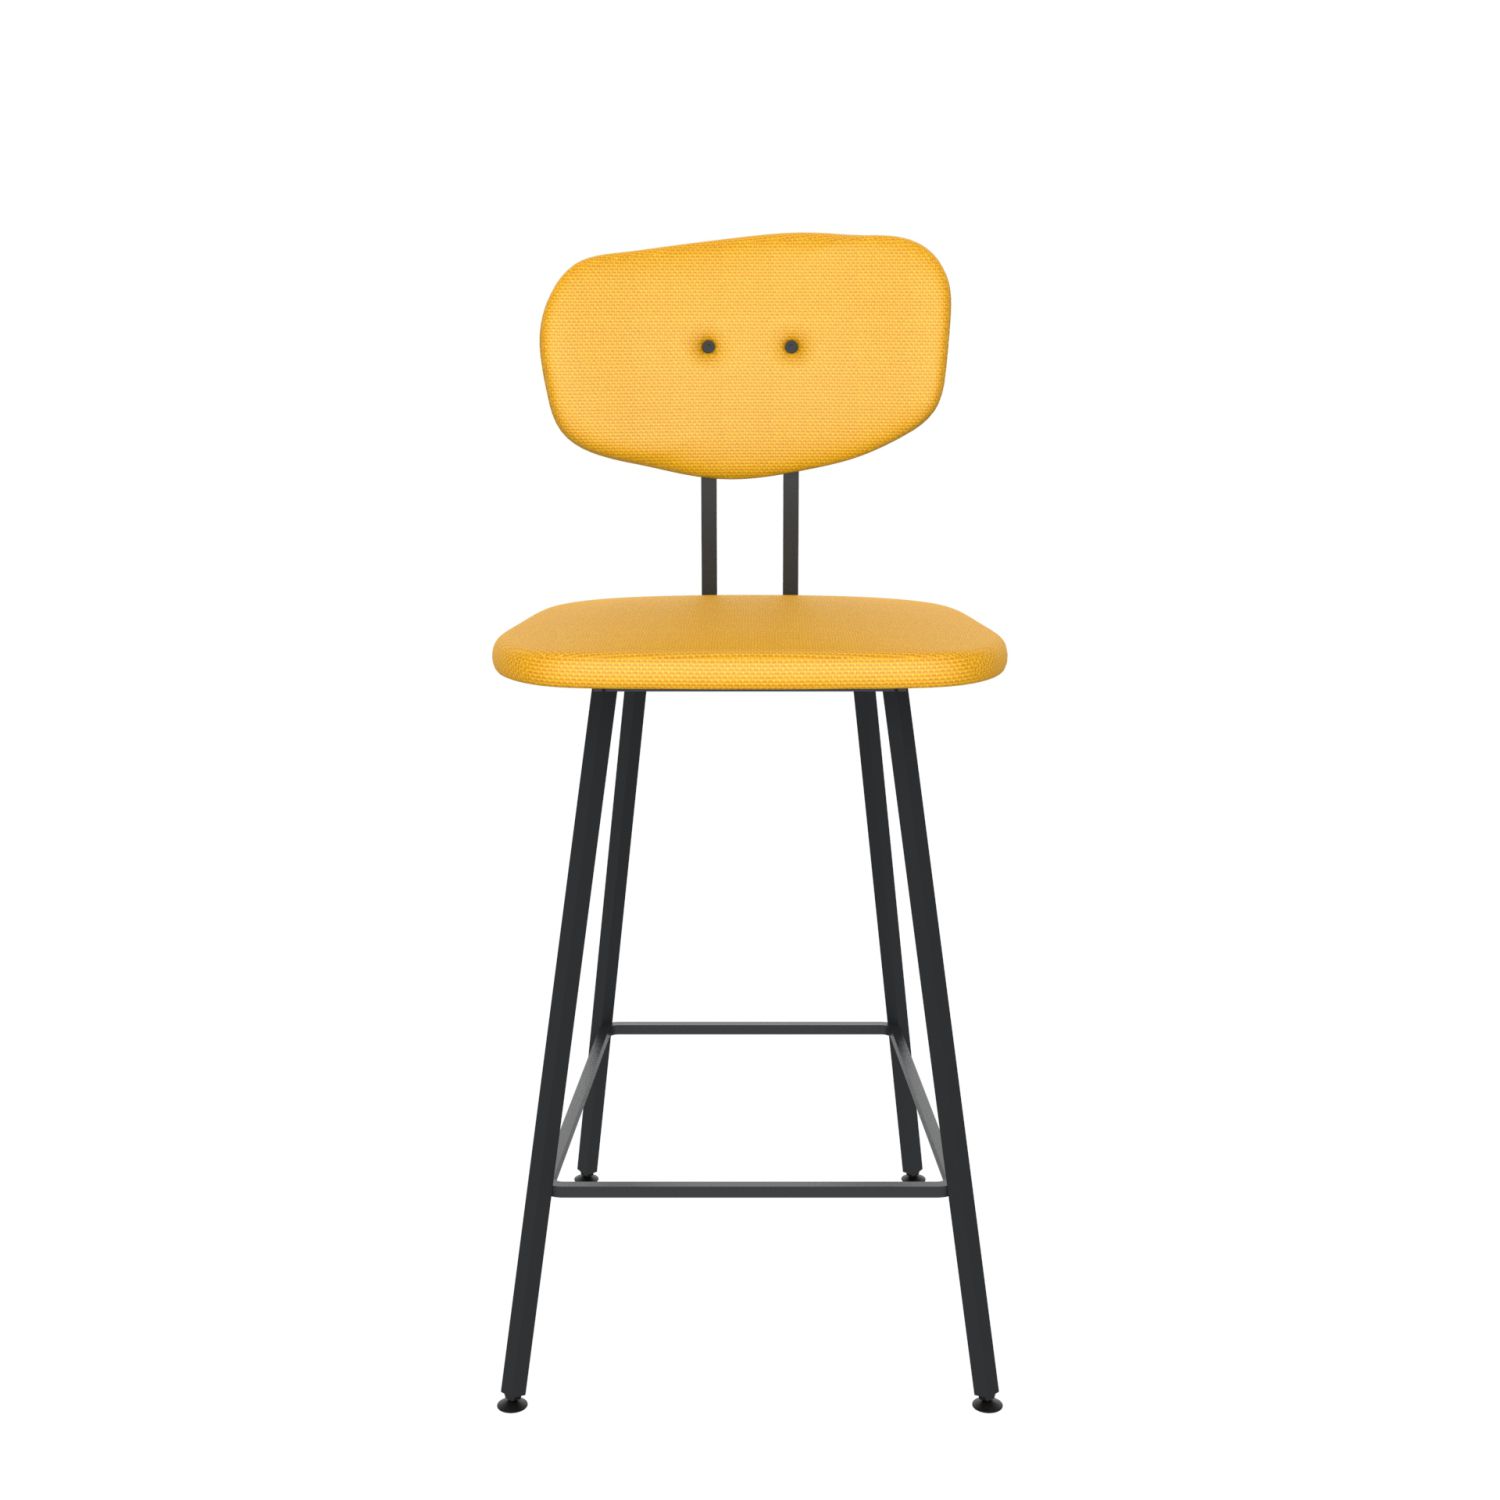 maarten baas barstool 65 cm without armrests backrest c lemon yellow 051 frame black